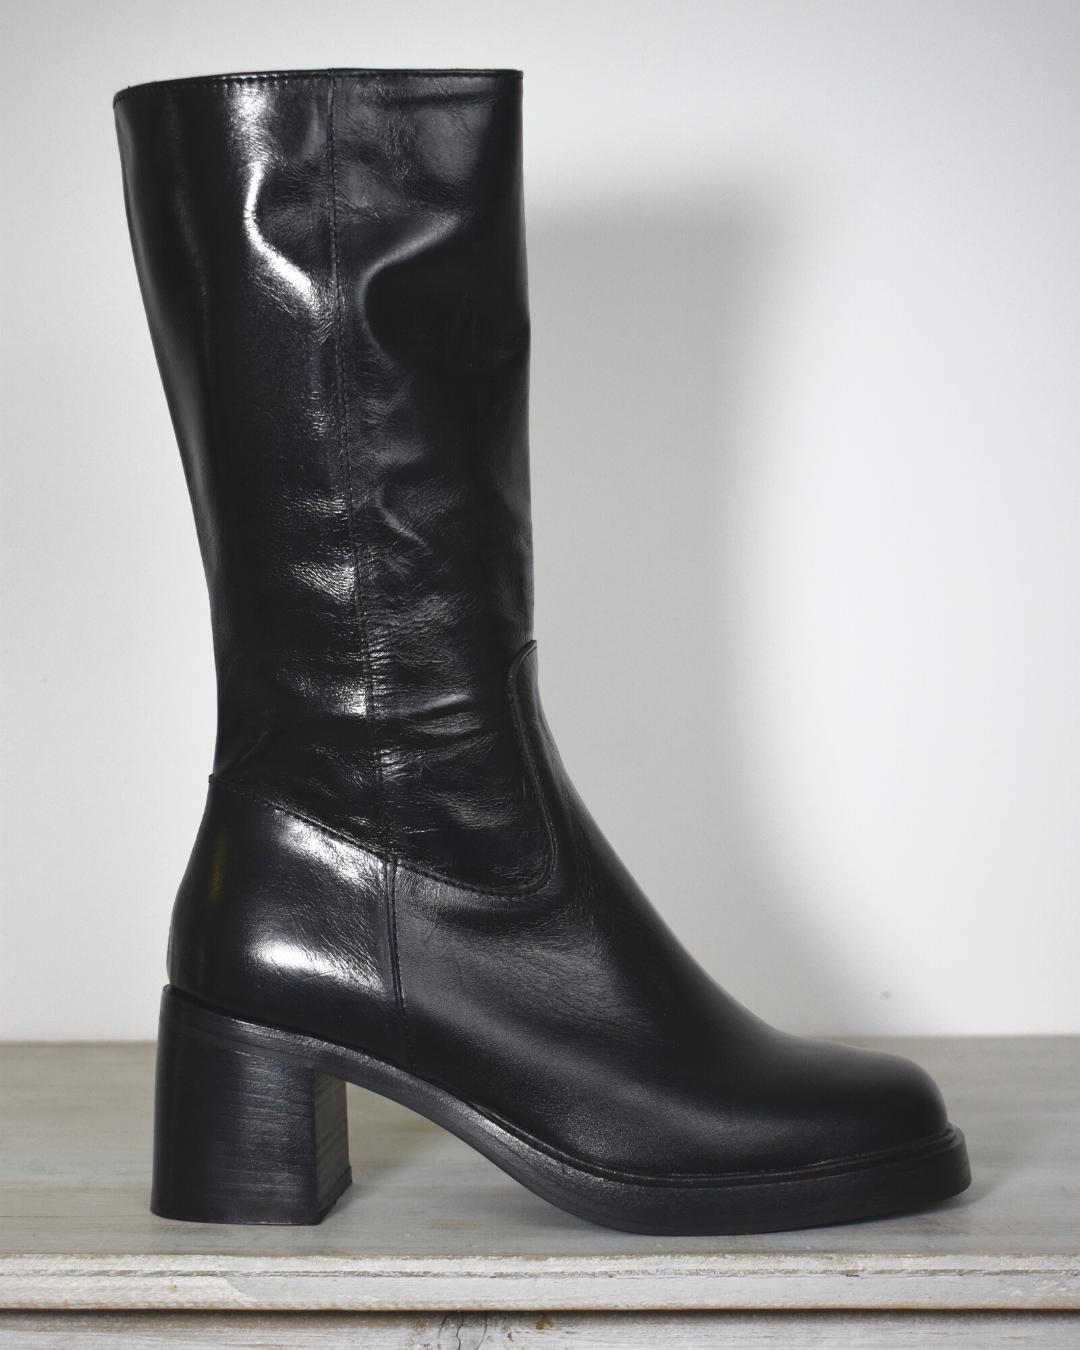 Black high heel boot